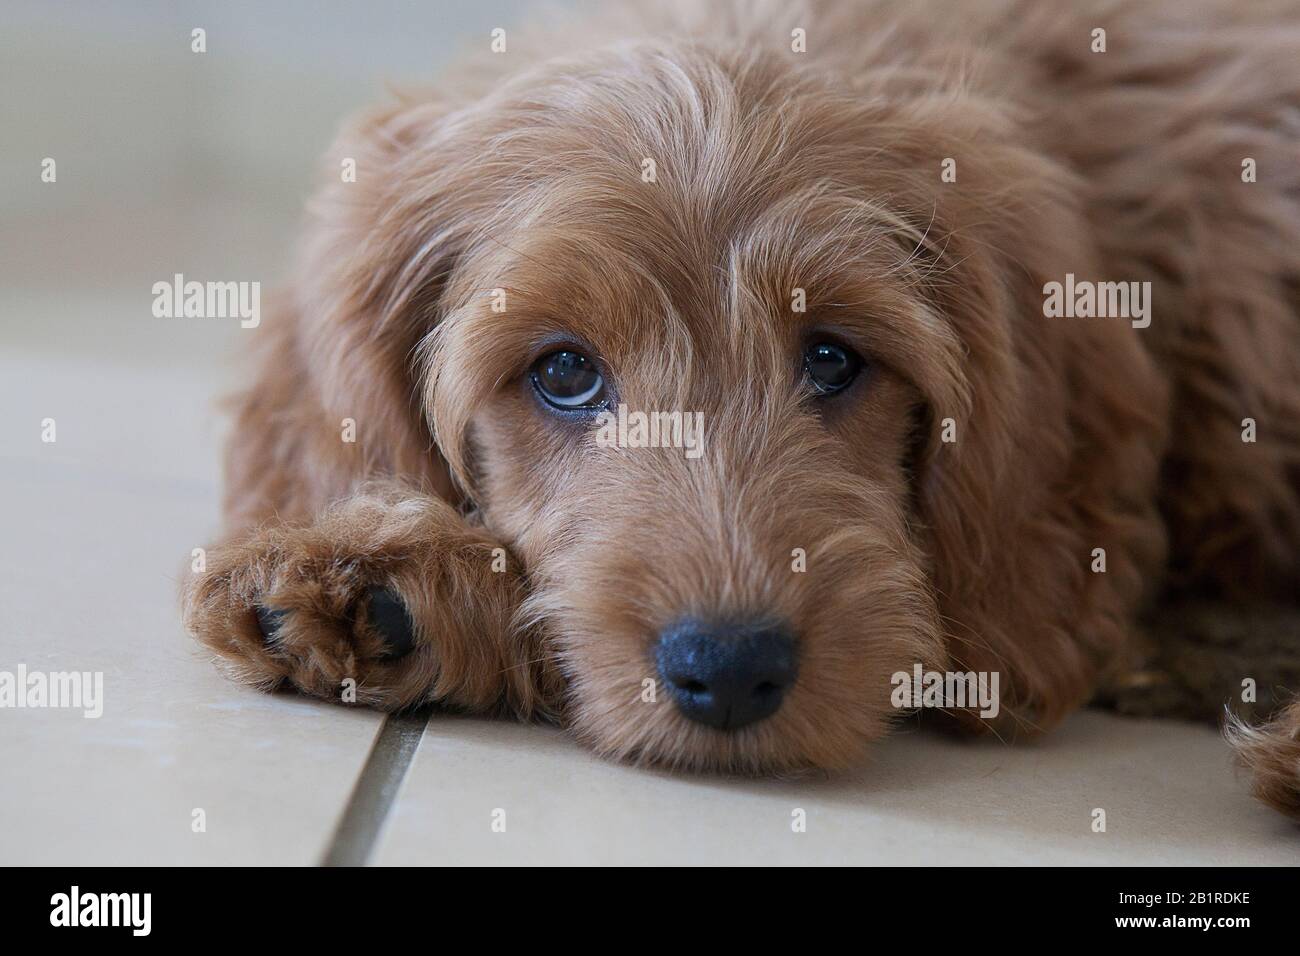 Un cucciolo rosso di 11 settimane (Cocker Spaniel x Miniature Poodle designer razza) con occhi marroni poggia su un pavimento piastrellato, guardando la macchina fotografica. Foto Stock